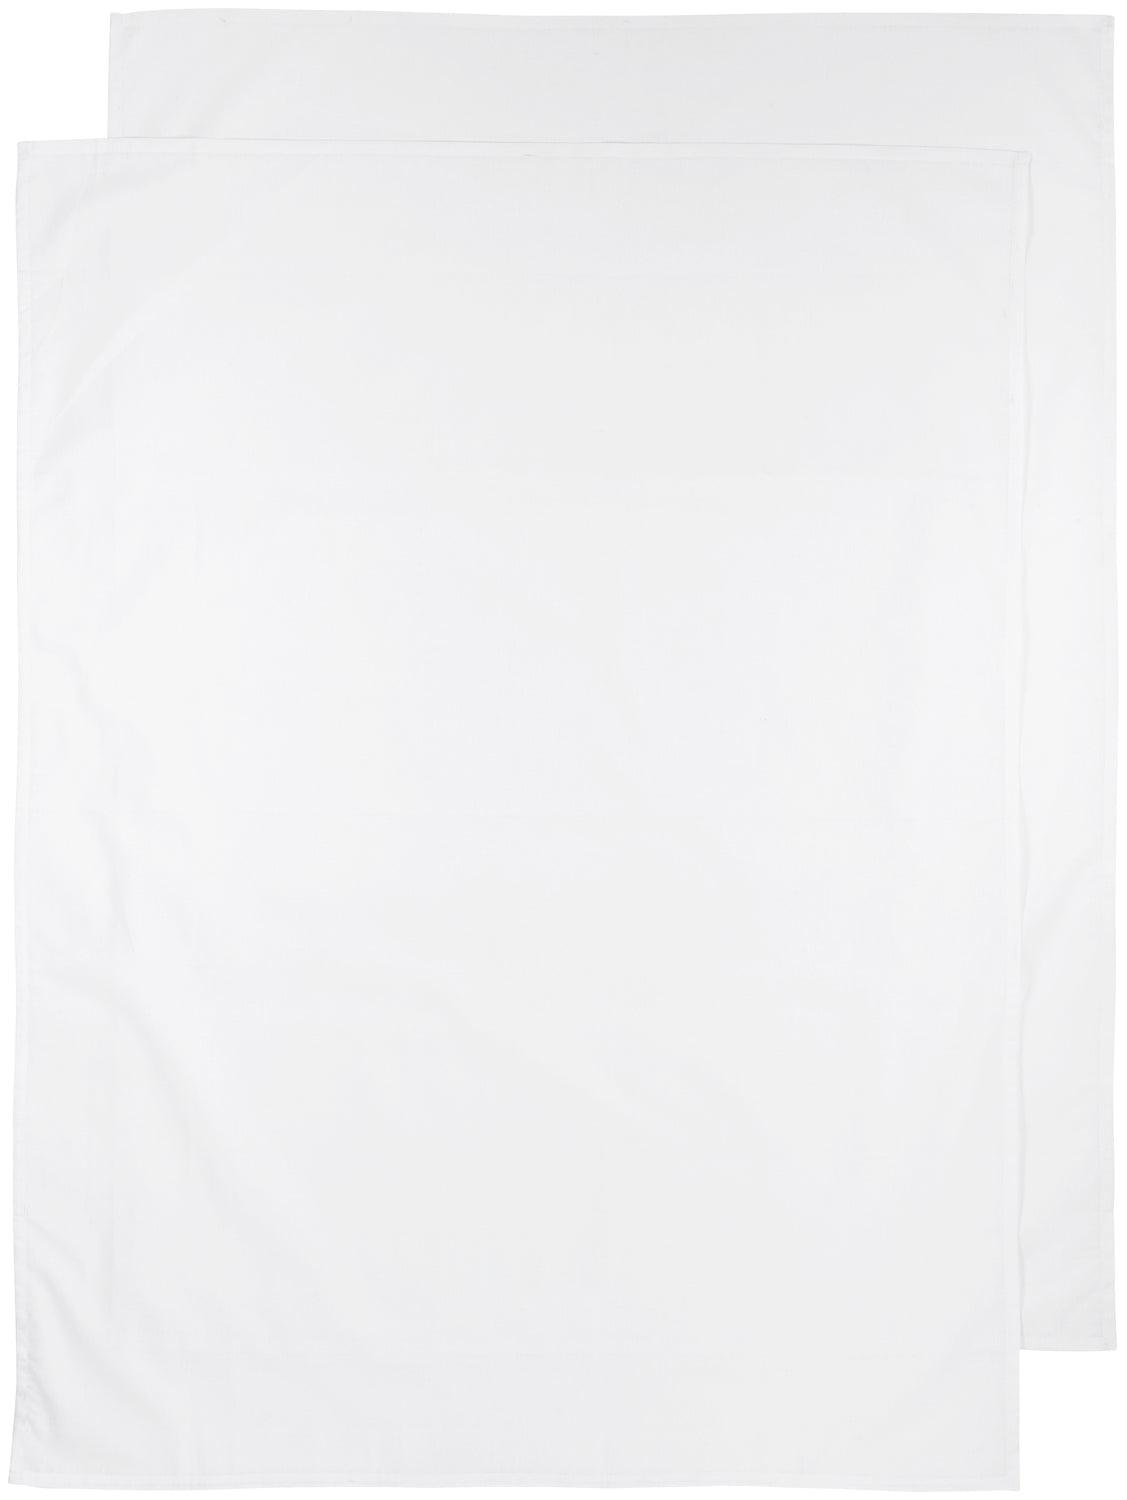 Crib Bed Sheet 2-Pack White - 75x100cm - Mari Kali Stores Cyprus